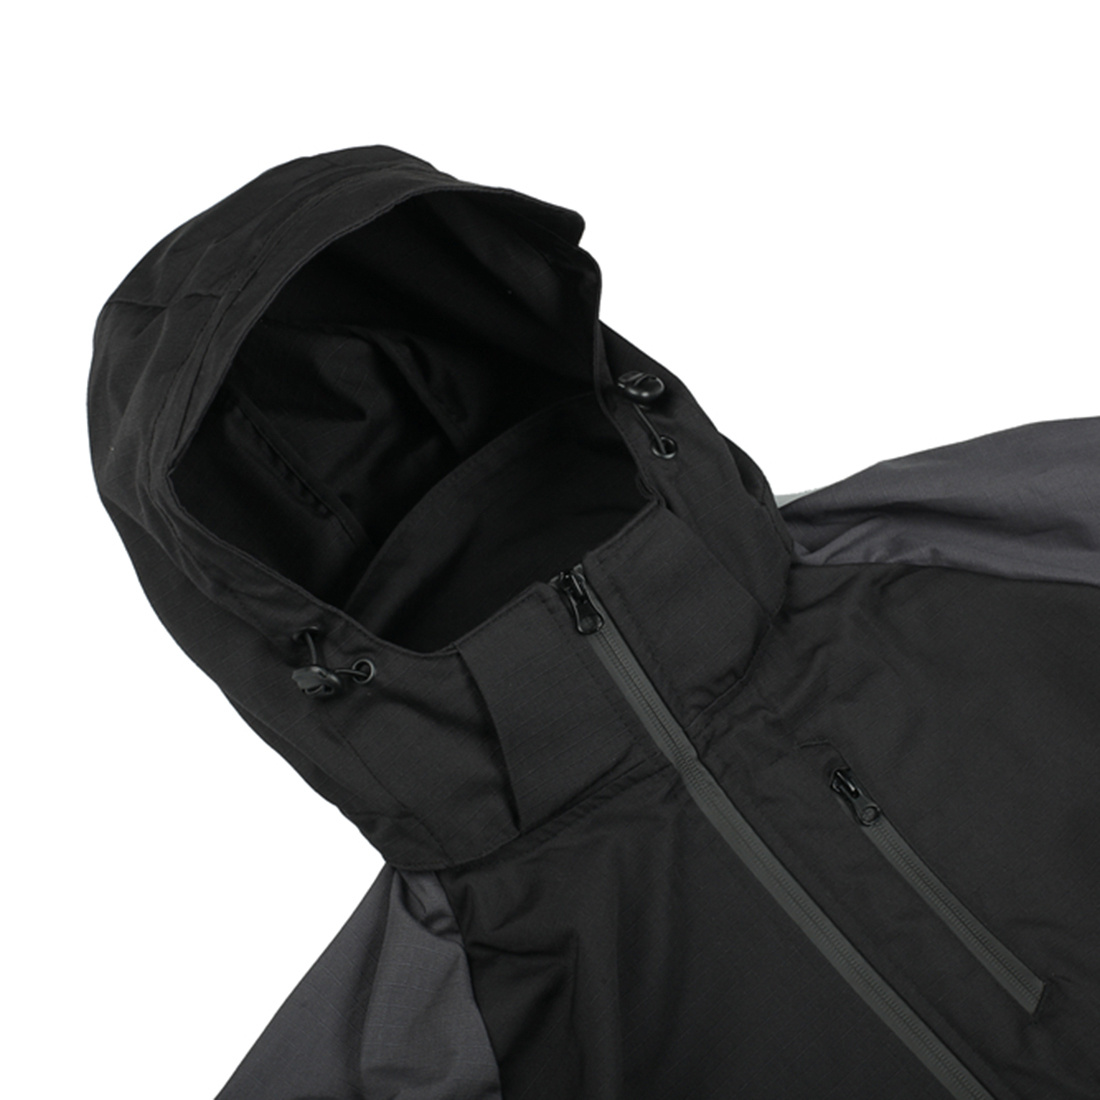 Men's Outdoor Windproof Wear-resistant Color Matching Jacket